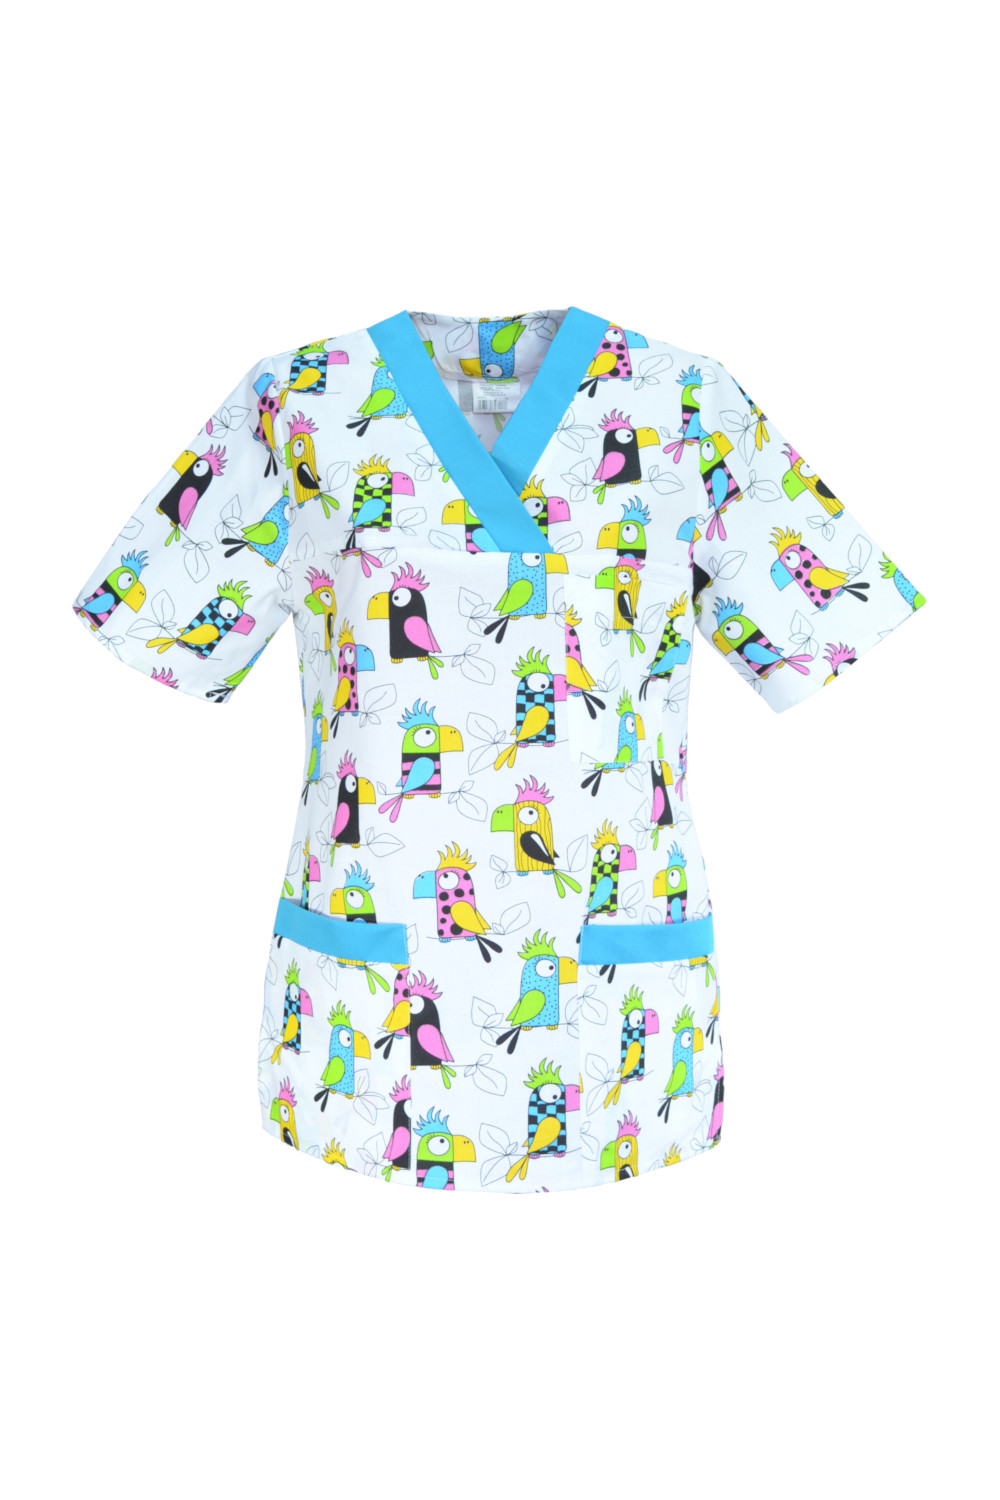 M-074G bluza medyczna damska we wzorki, kolorowa. Wzór papugi z turkusem